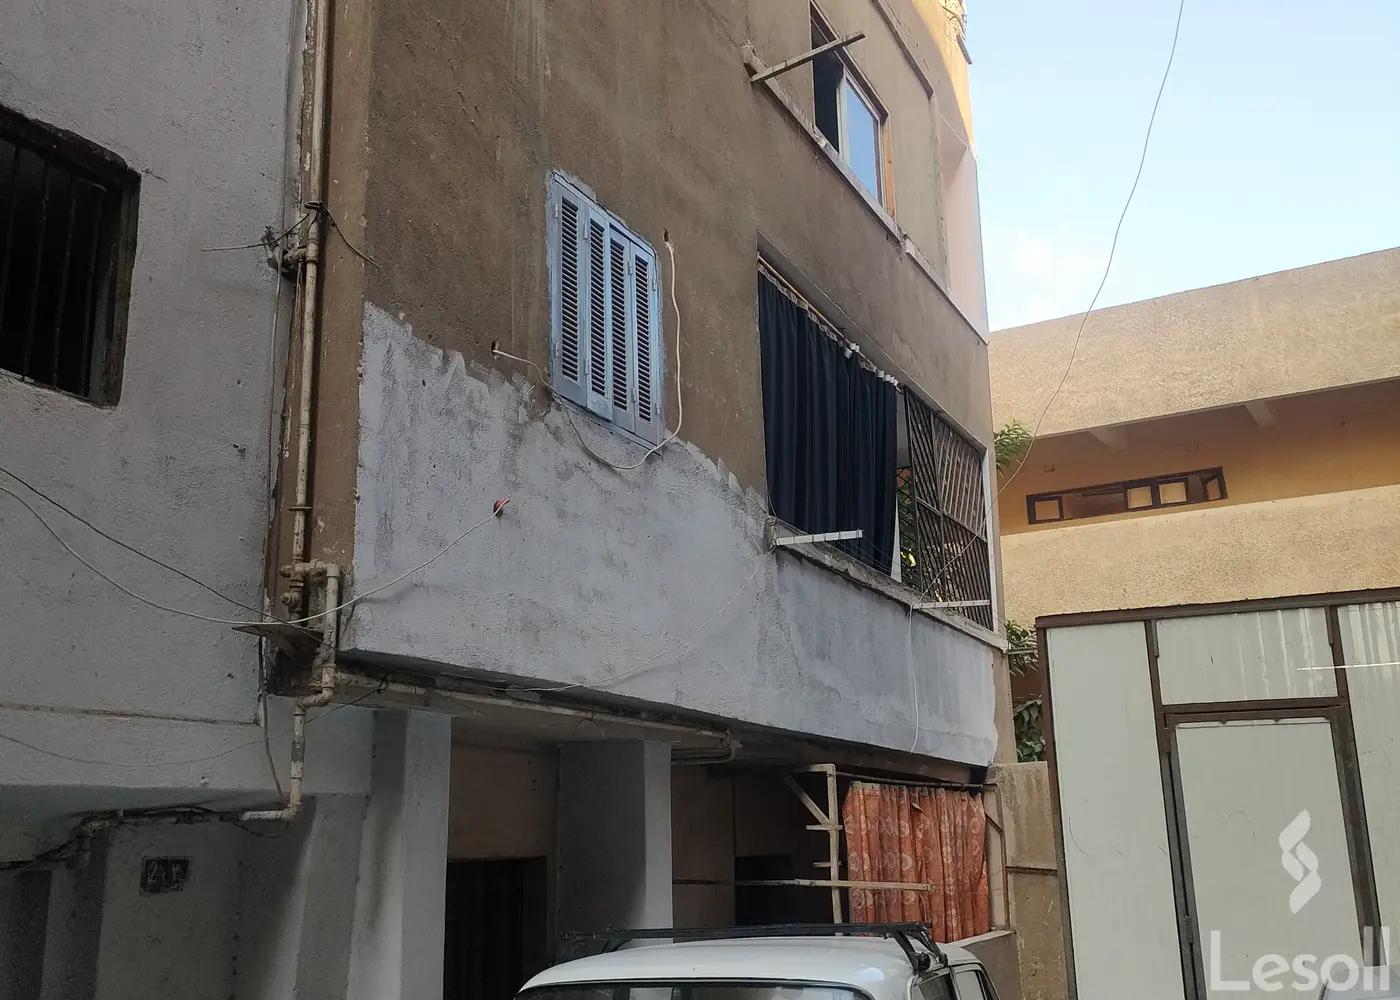 شقة للبيع شارع محمد بيومى متفرع من معمل الألبان الخلفاوى شبرا مصر